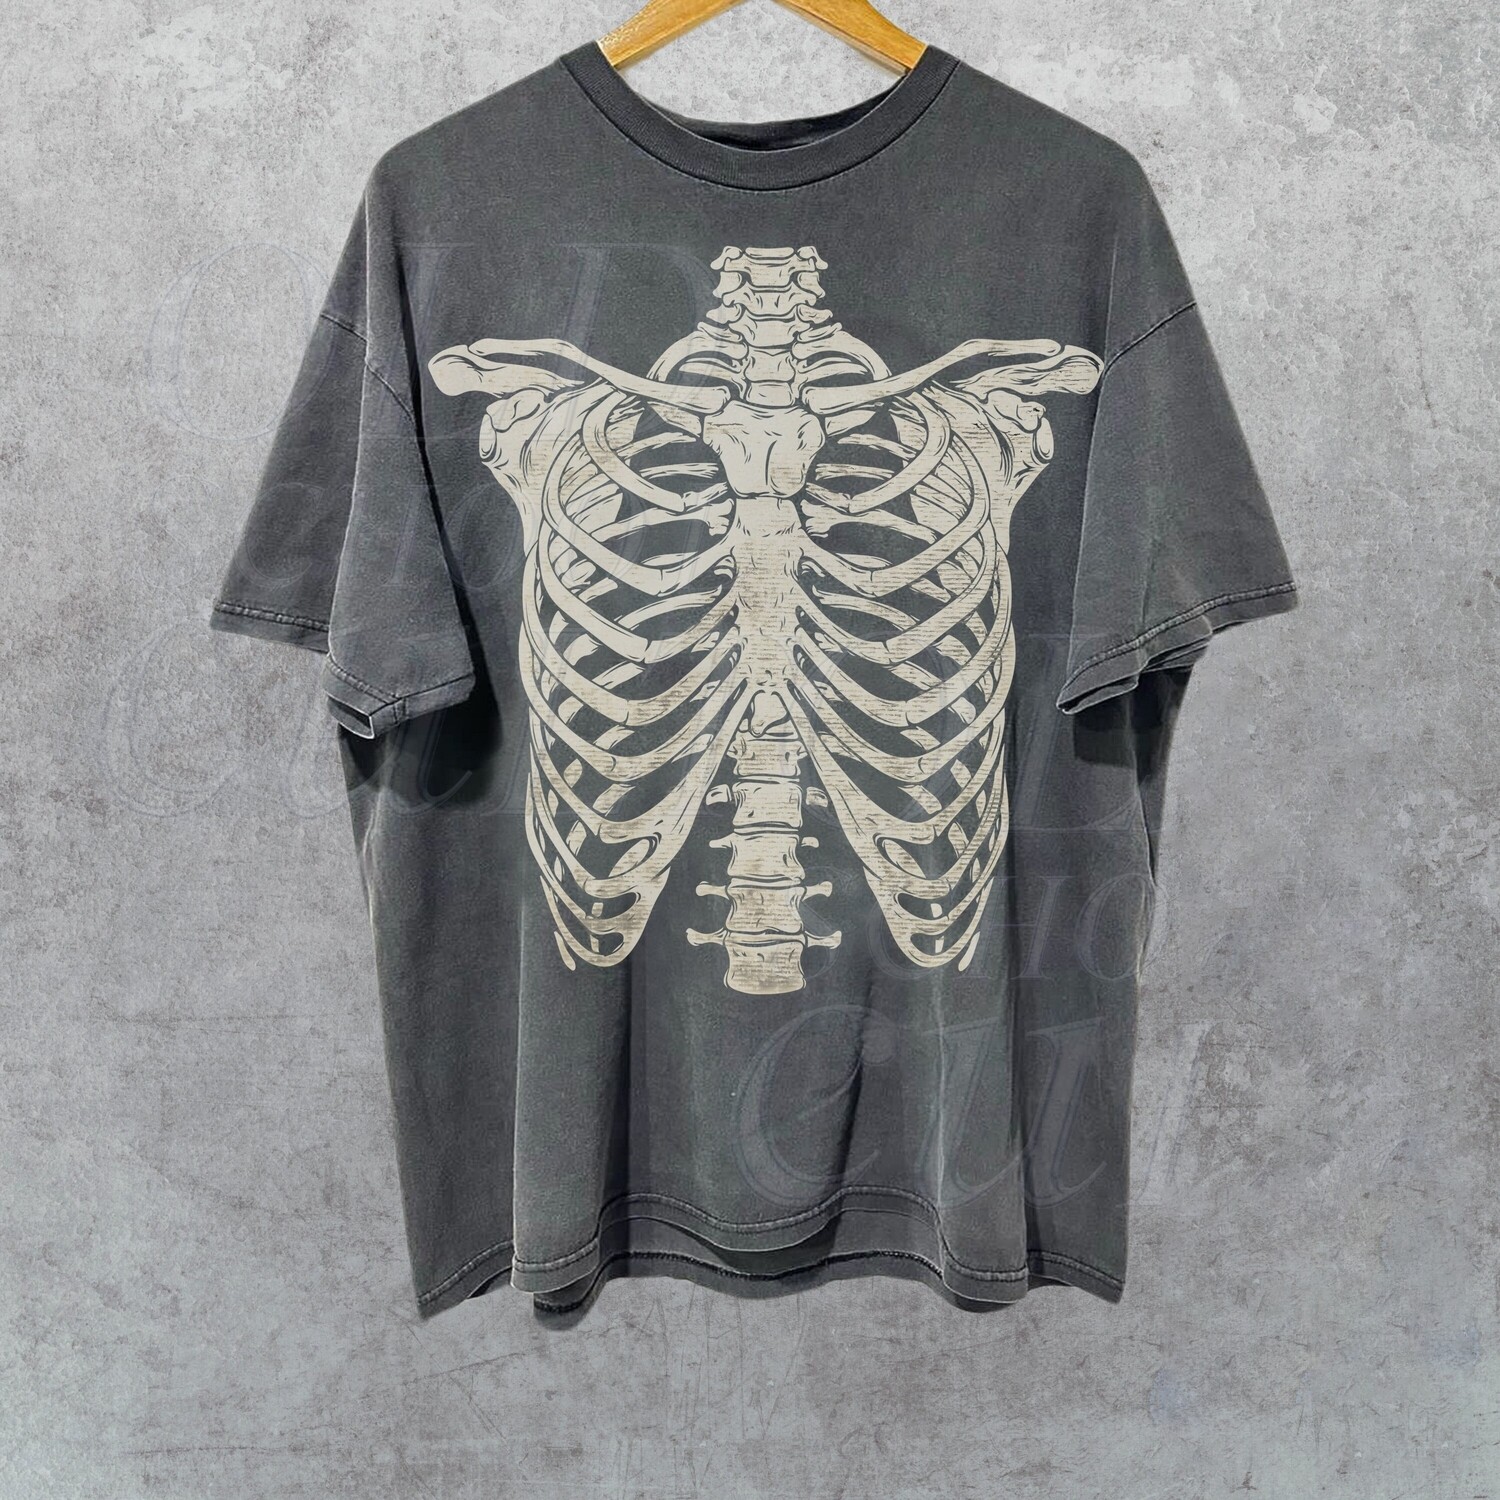 Skeleton Rib Vintage Graphic Shirt, Rib Cage Shirt, Retro Skeleton Tee, 90s Skull Shirt, Spooky Shirt, Y2k Skull Tee